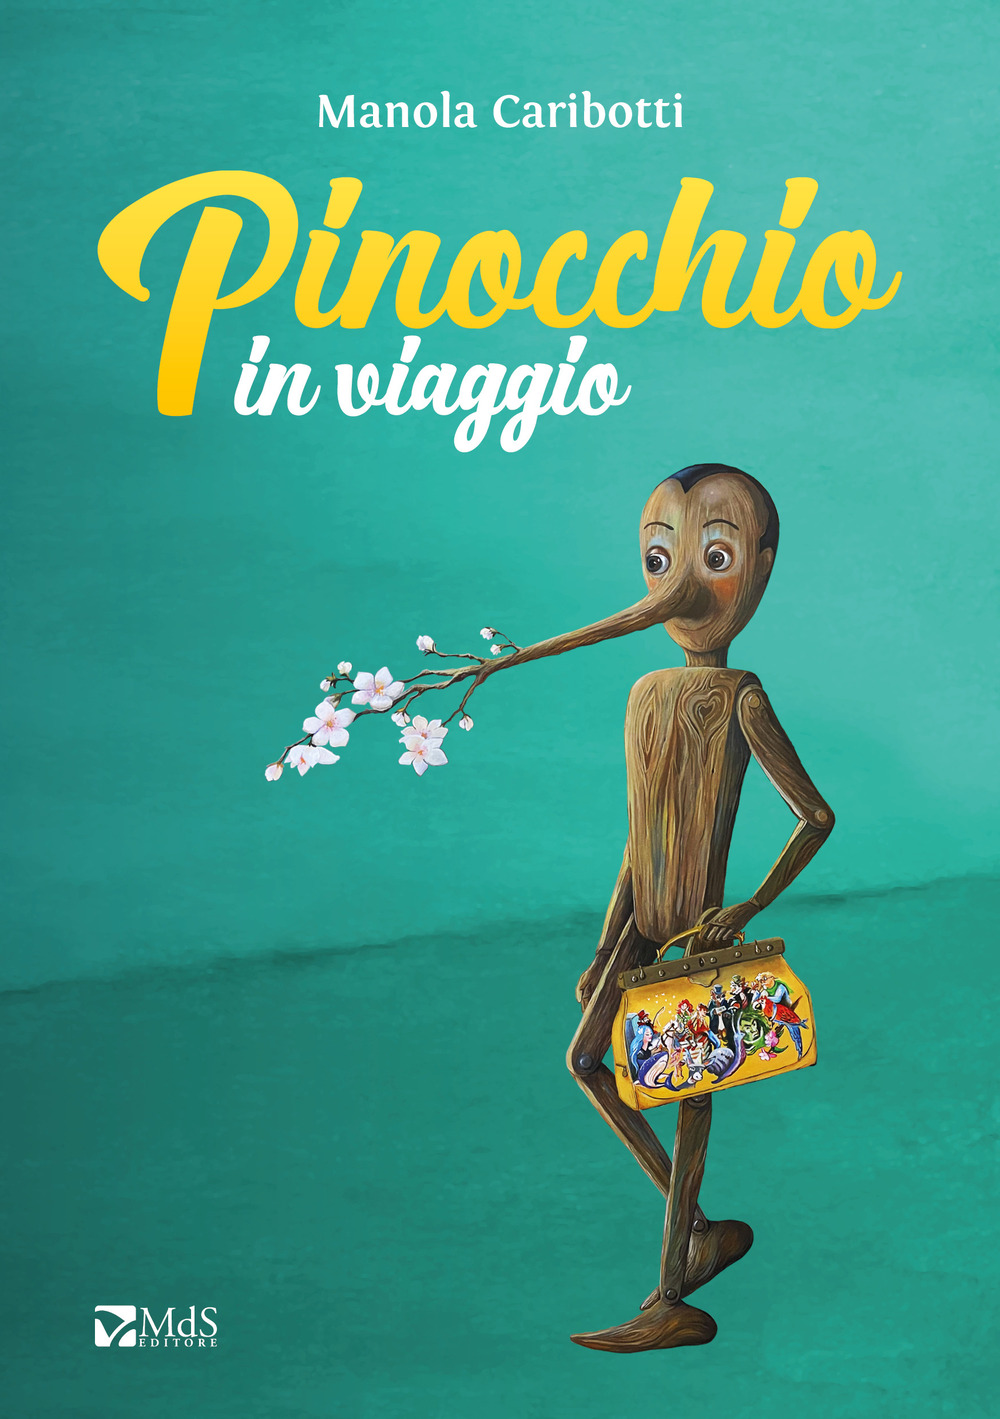 Pinocchio in viaggio